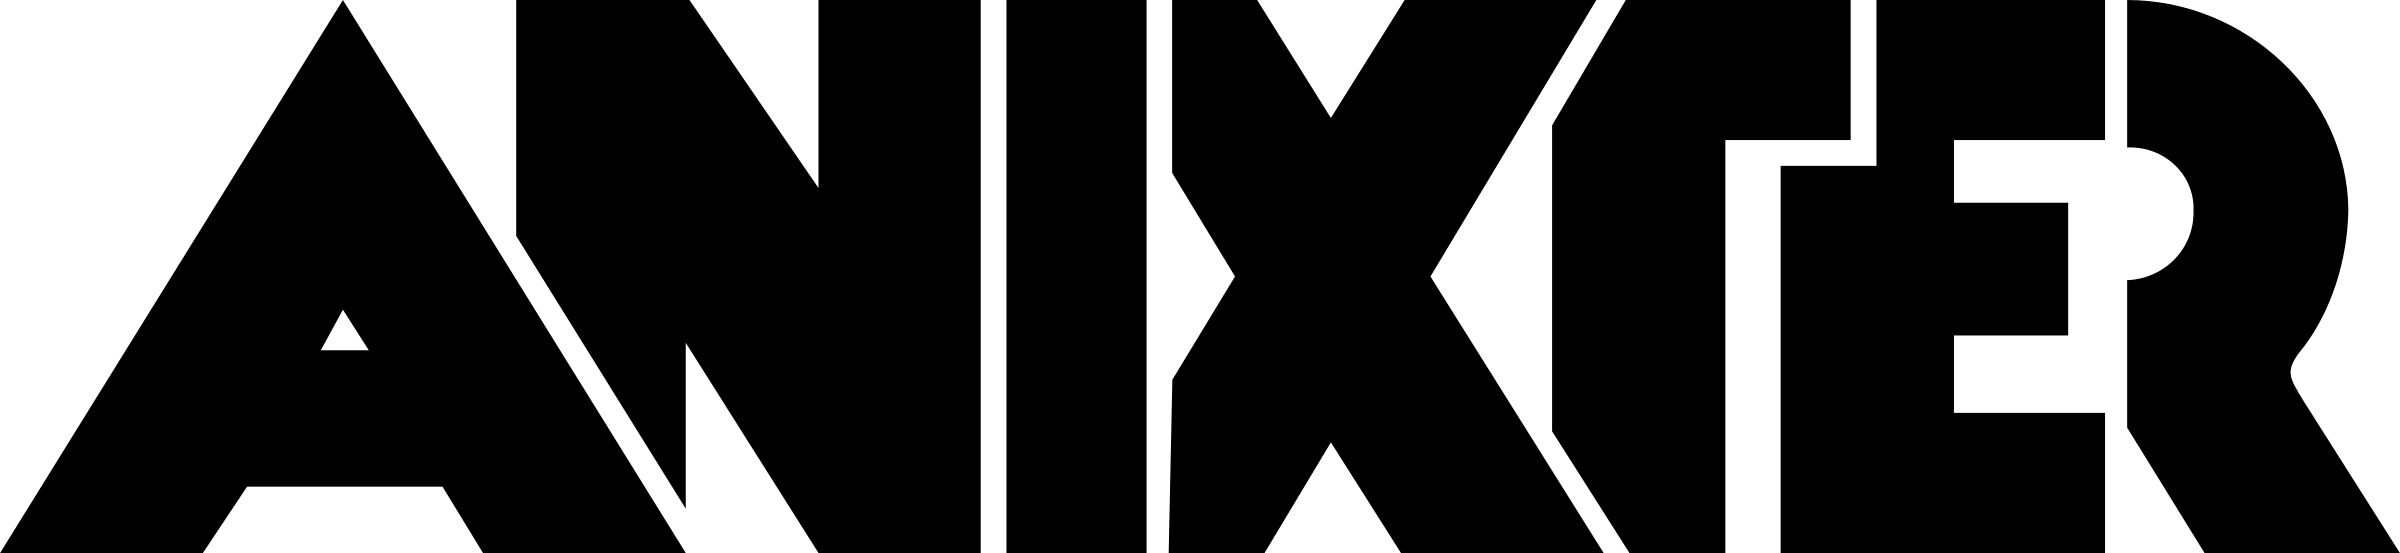 Anixter Logo - Anixter Logo PNG Transparent & SVG Vector